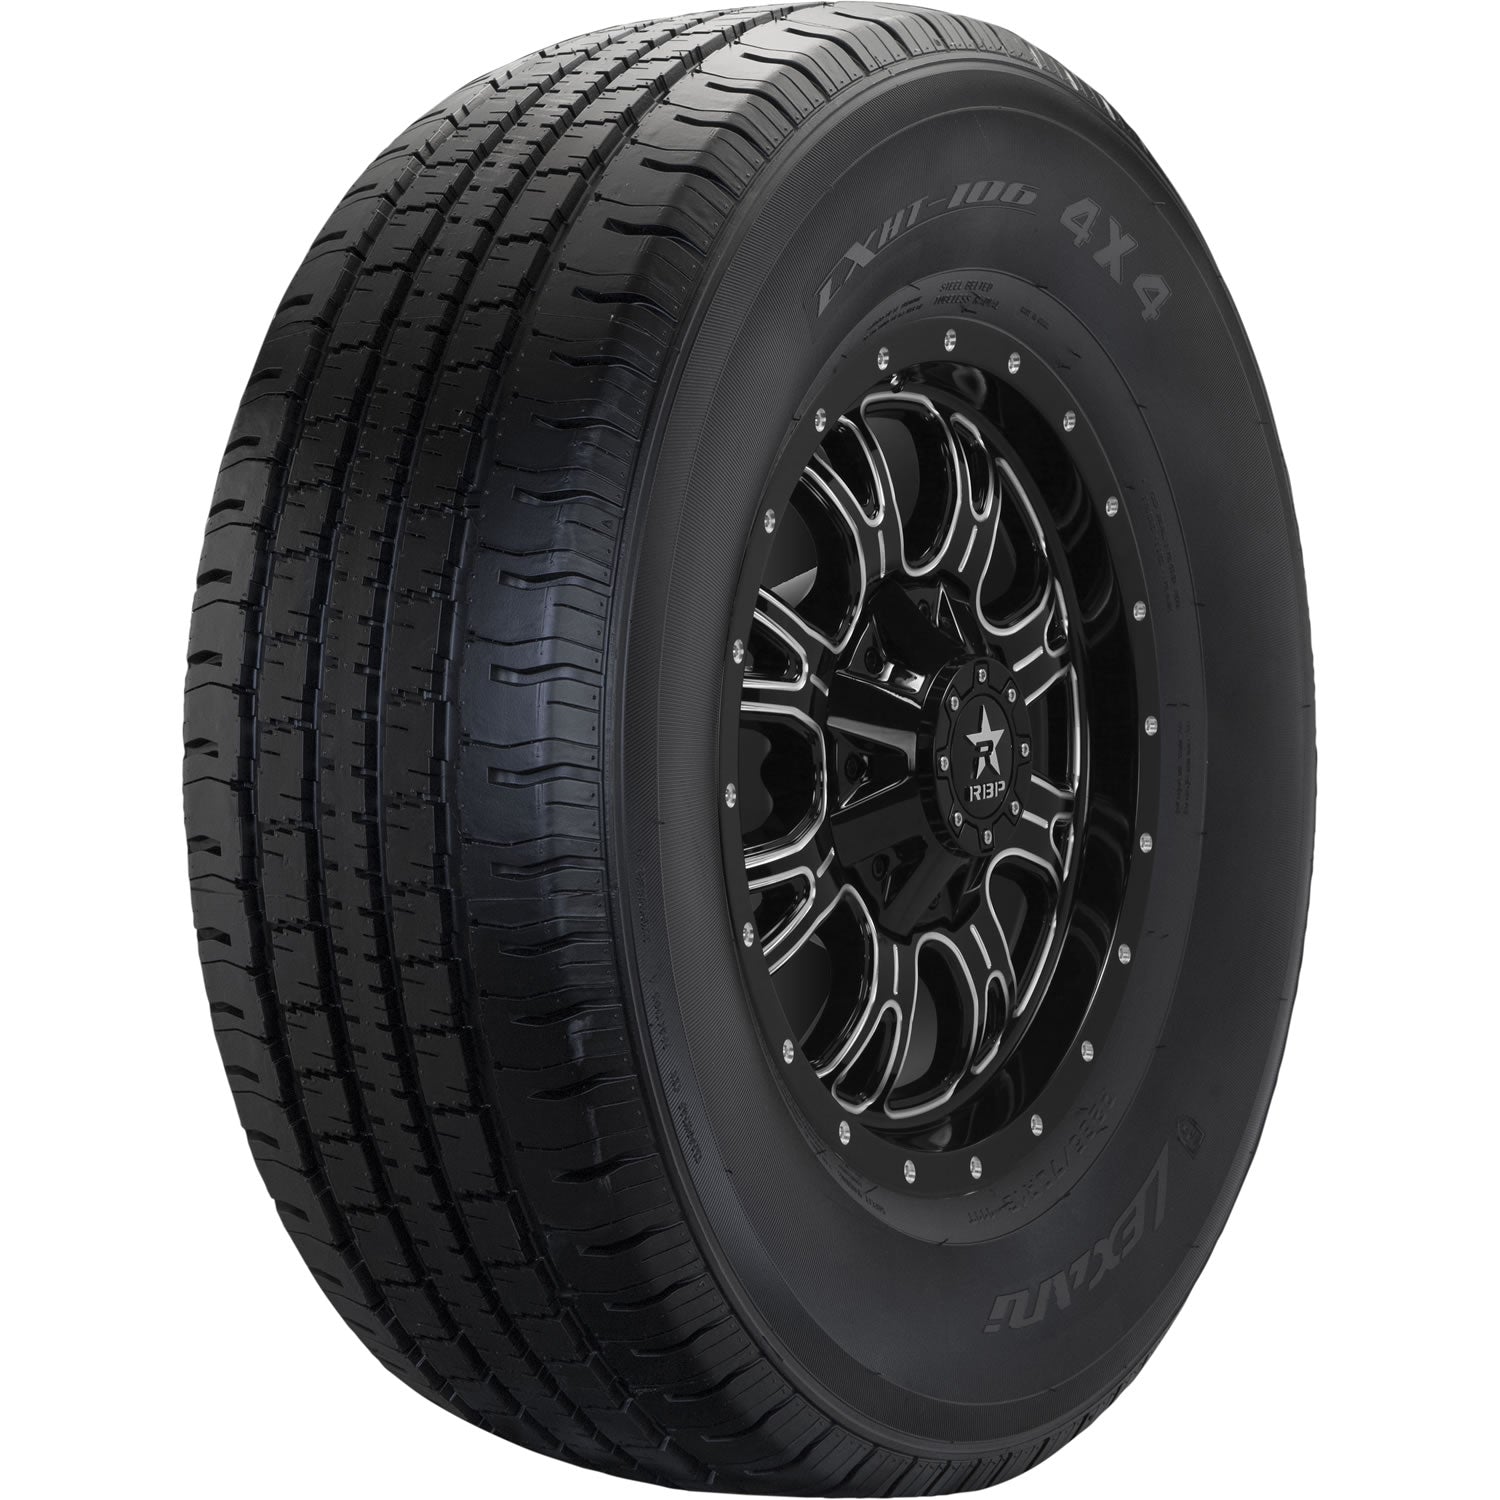 LEXANI LXHT-106 P225/75R16 (29.3X8.8R 16) Tires